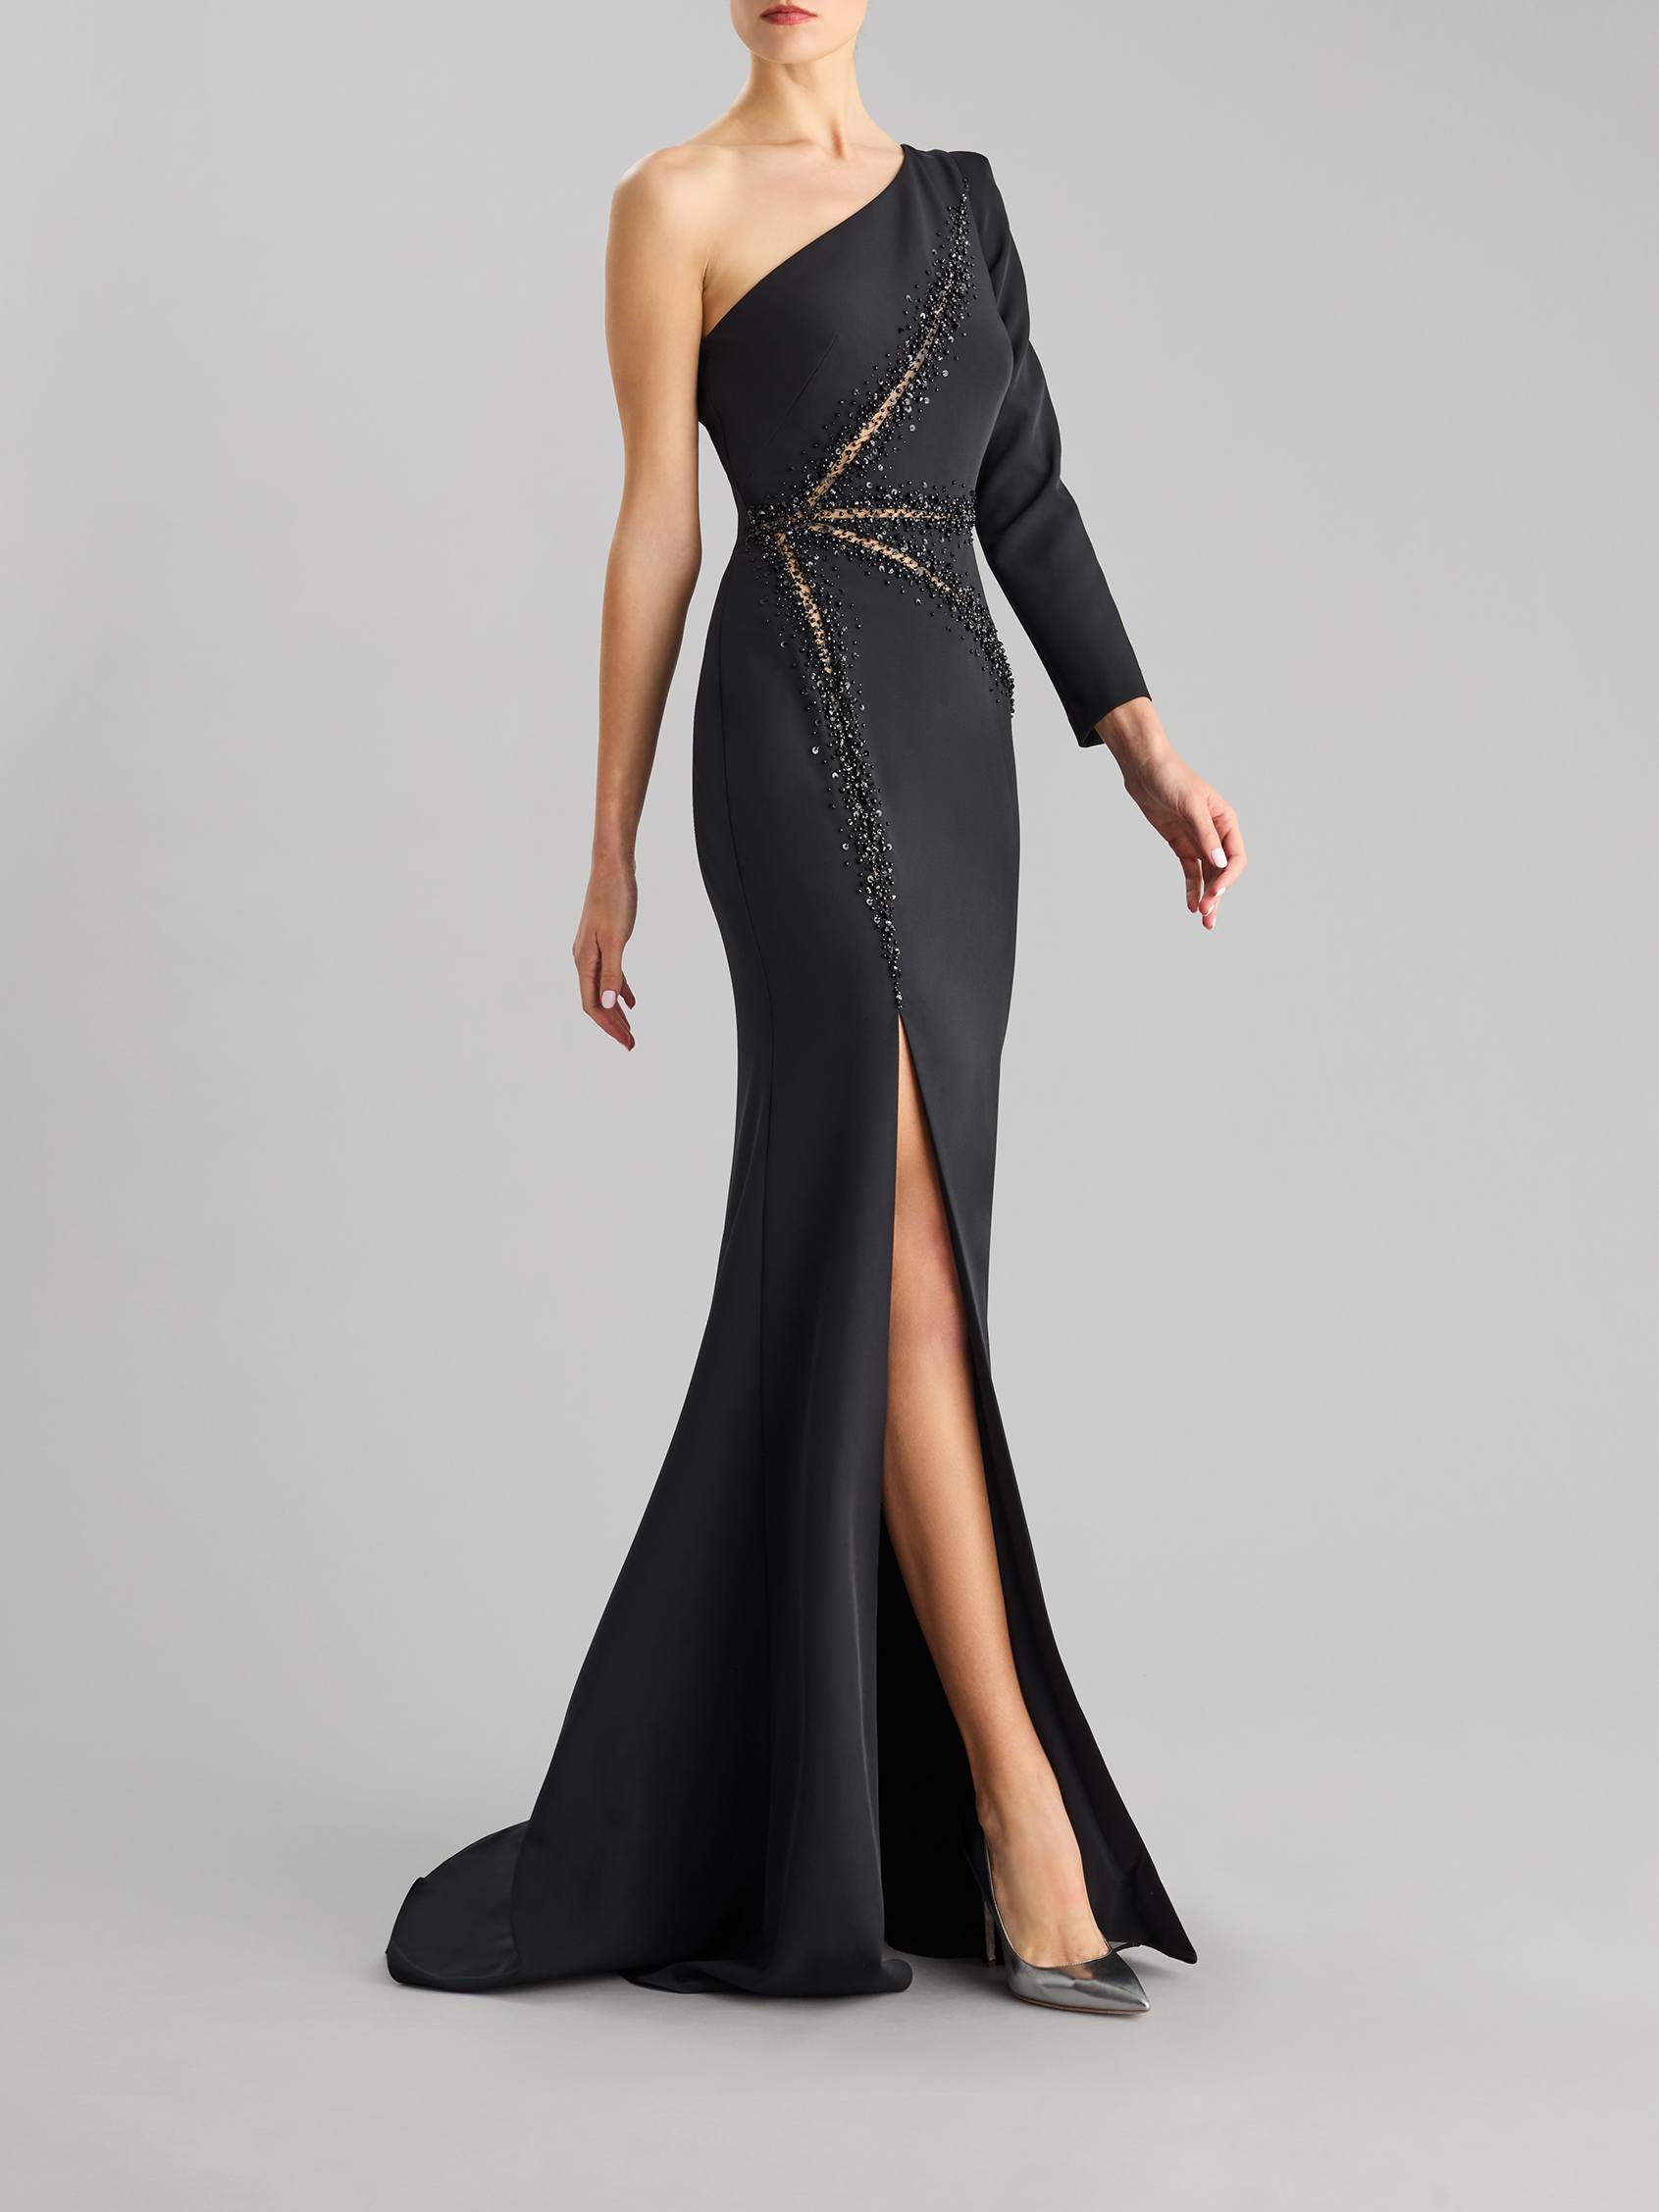 Vestidos de gala exclusivos de alto luxo | Pronovias